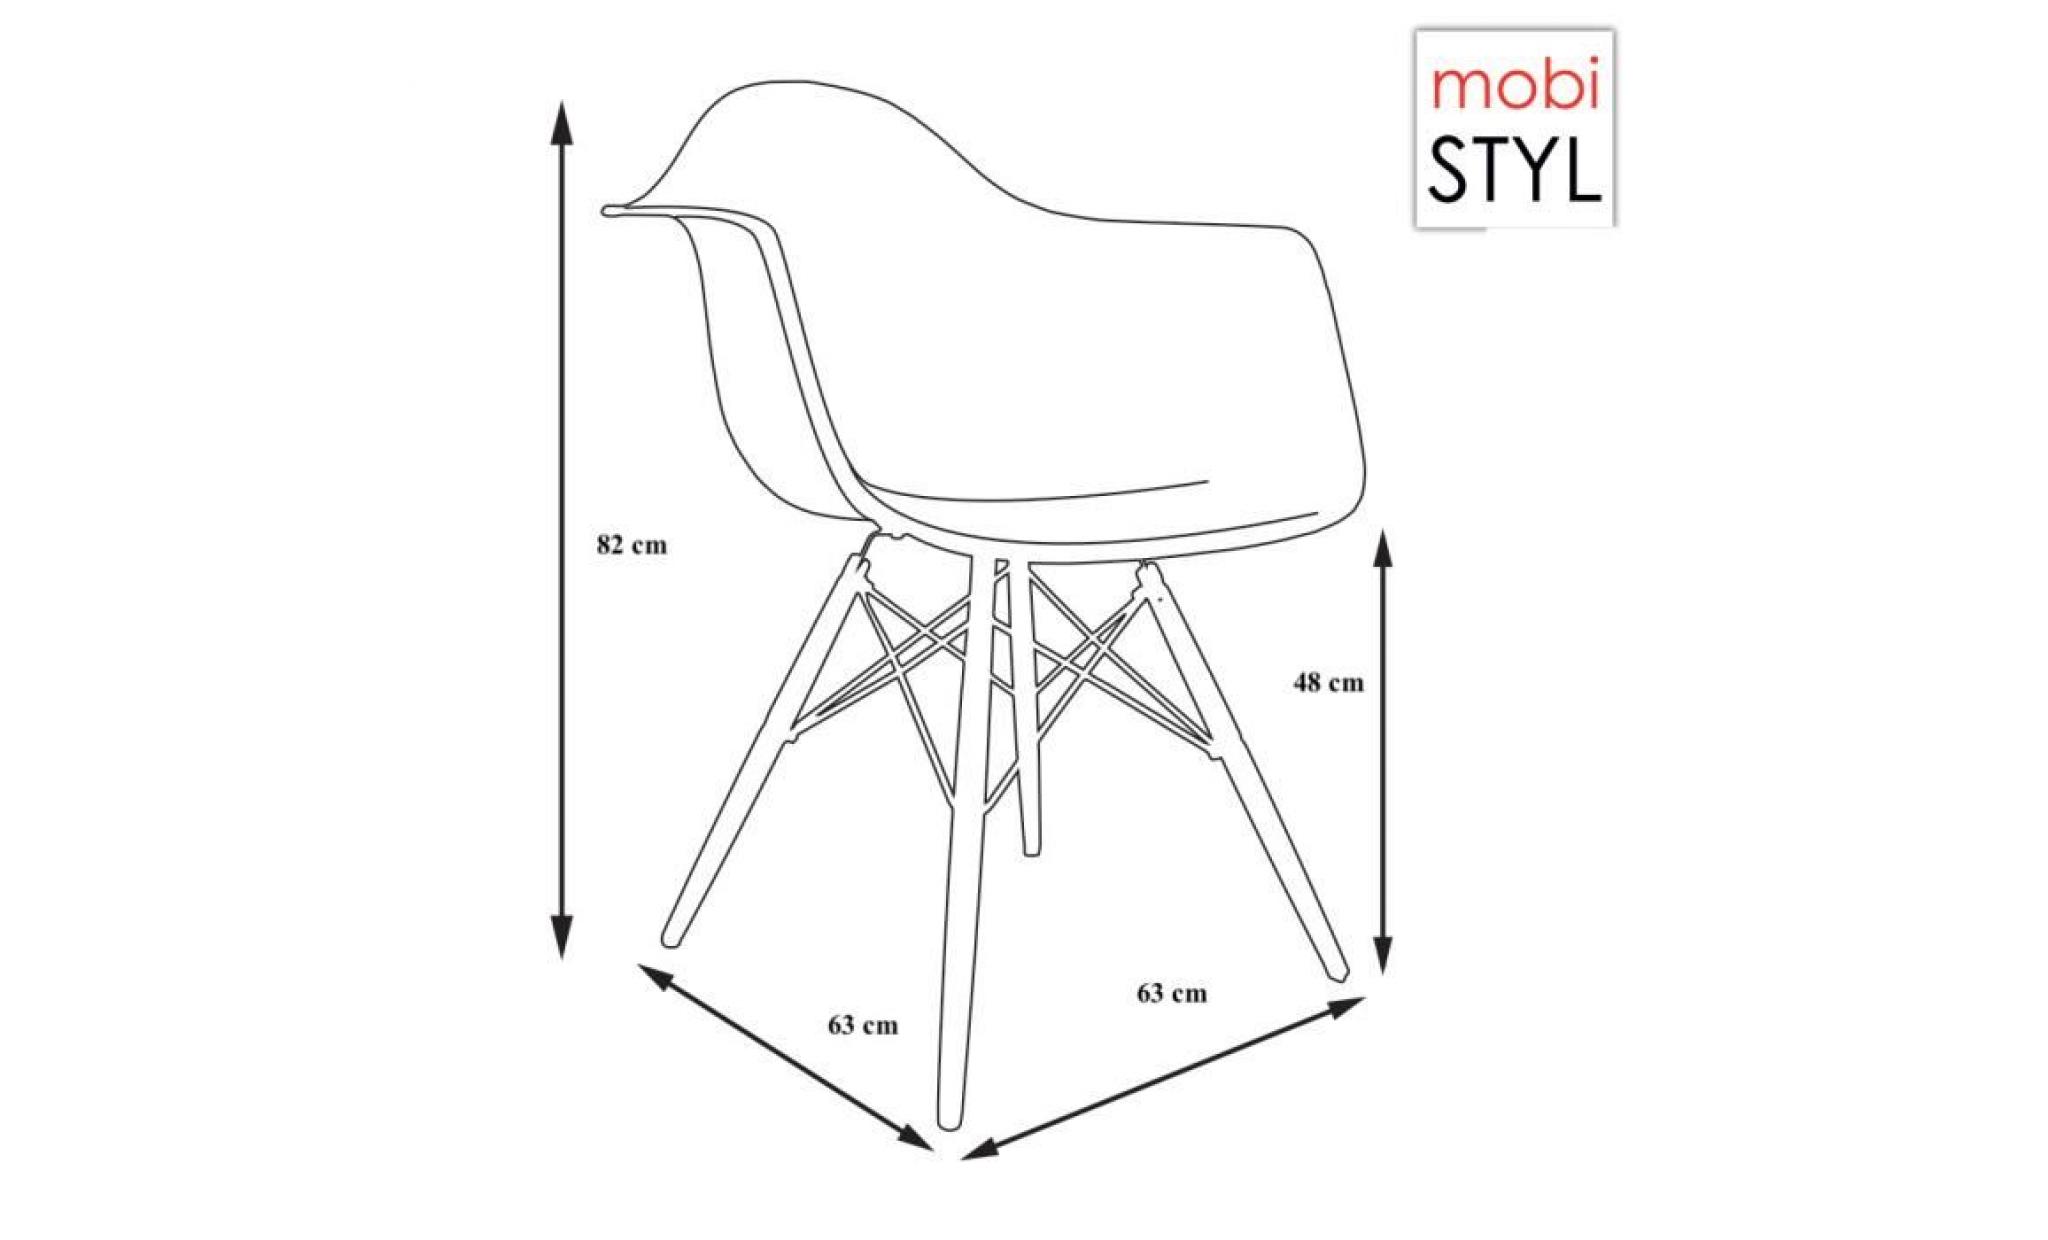 1 x fauteuil design retro style eames daw hauteur 48cm pieds en bois vernis noyer assise bordeaux mobistyl® pas cher